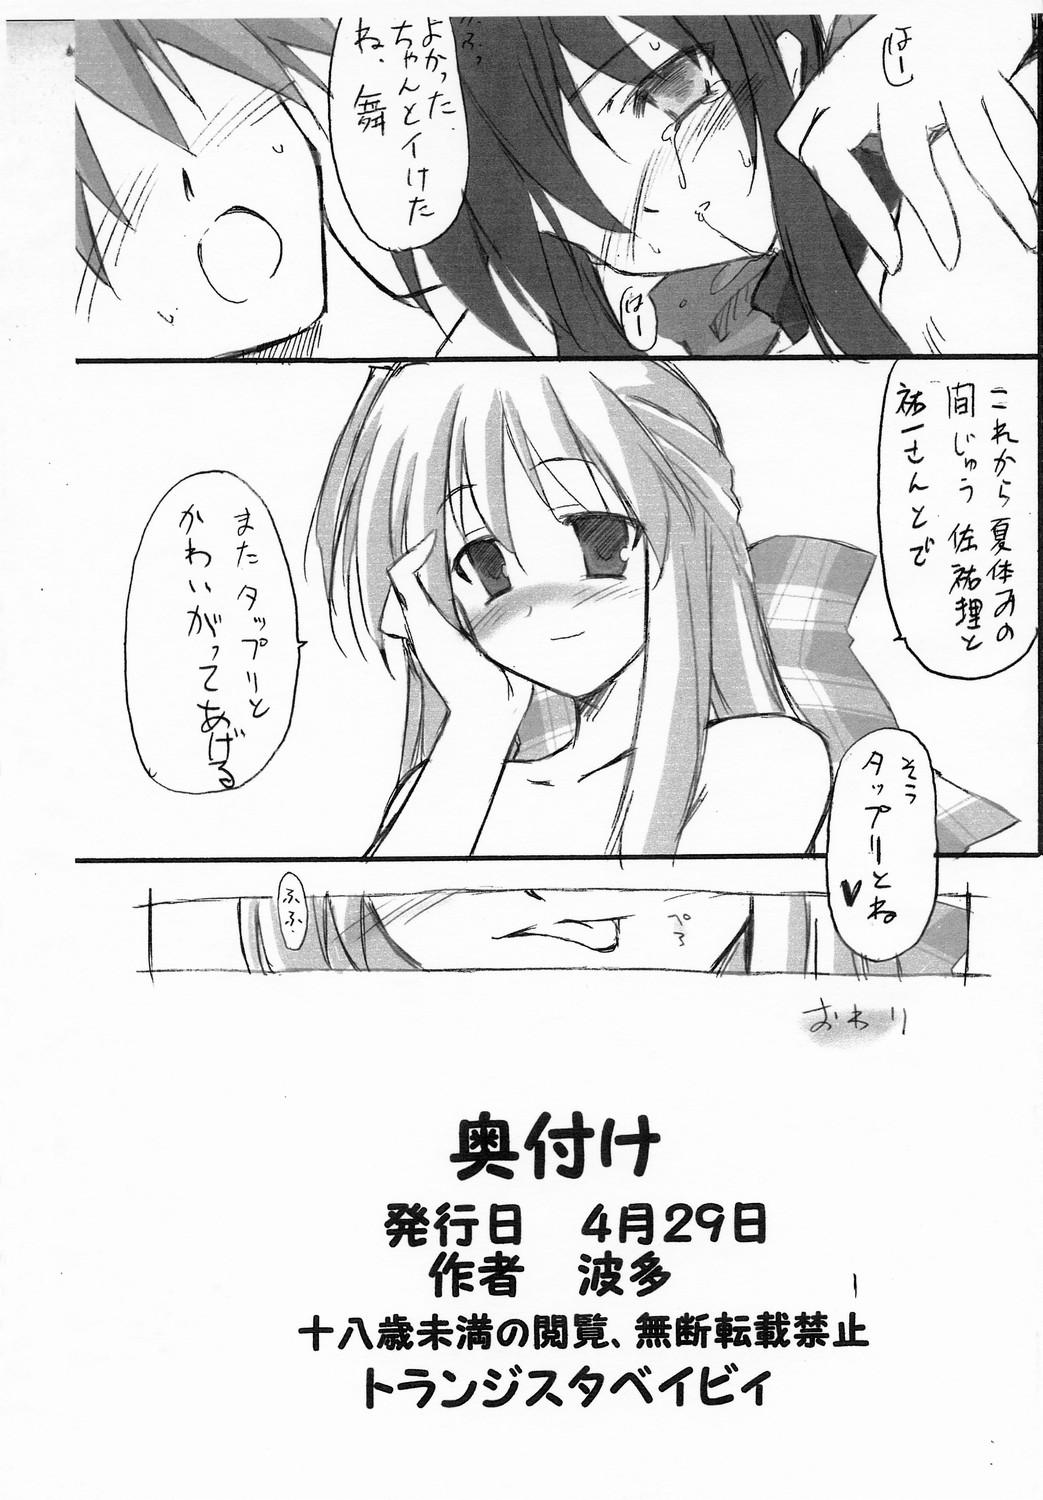 Retro Haru na no ni - Manatsu no Usagi - Kanon Cam Sex - Page 13